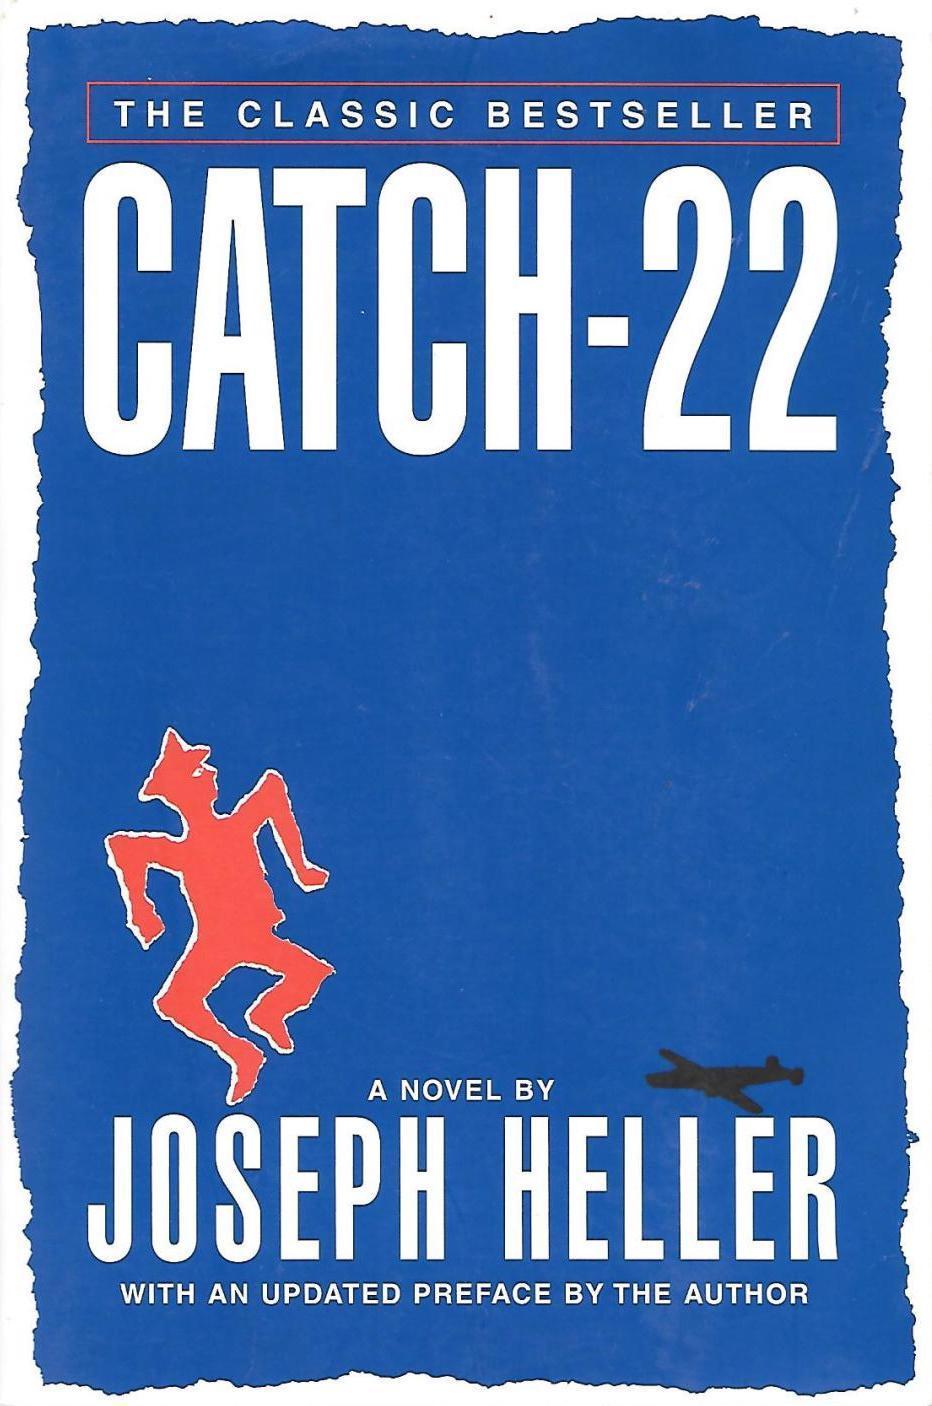 Joseph Heller: Catch-22